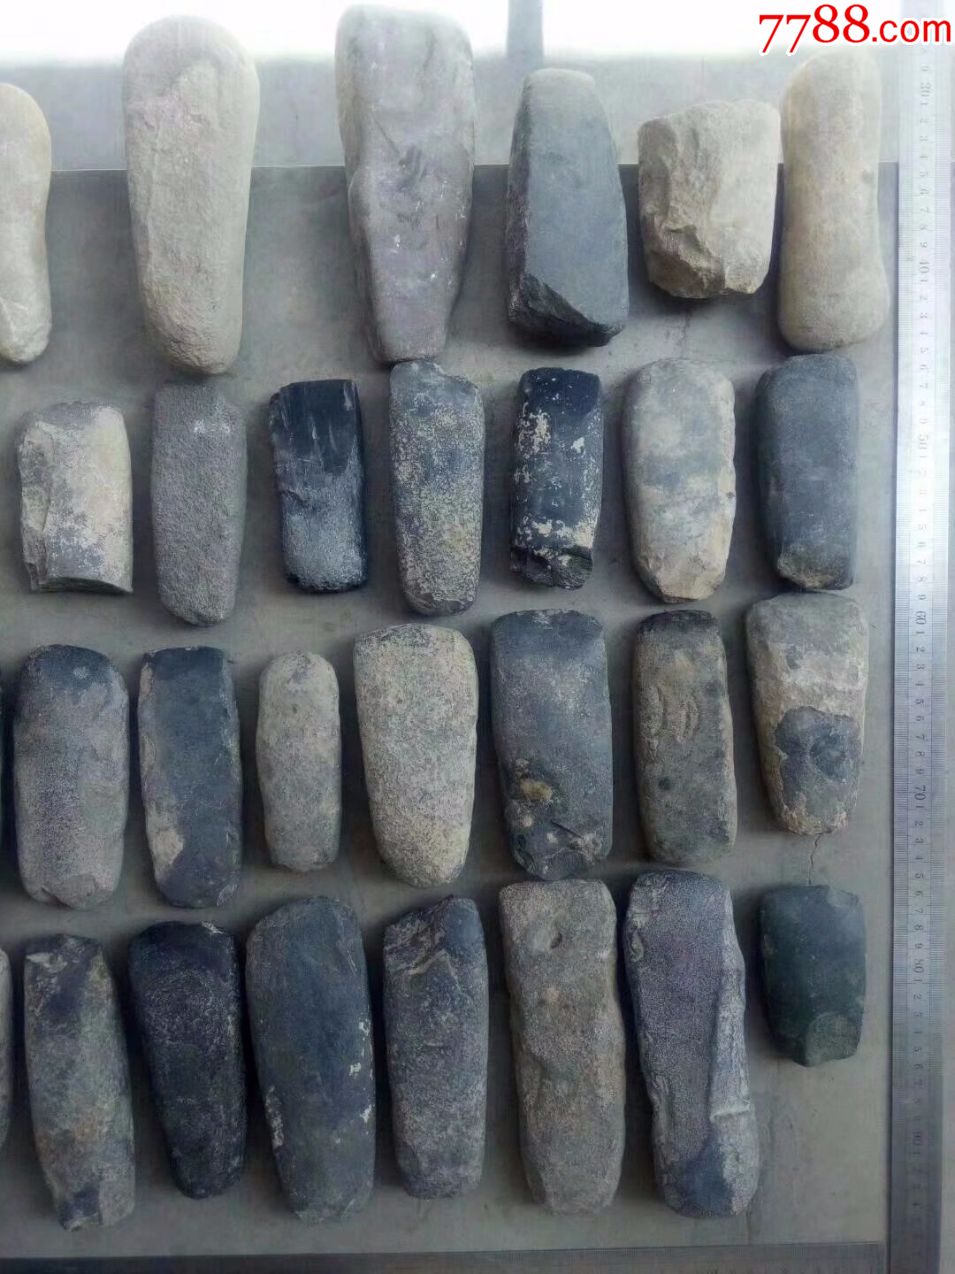 高古石器时代齐家文化石斧石铲石凿大小件件不同一大堆46件全部拿走